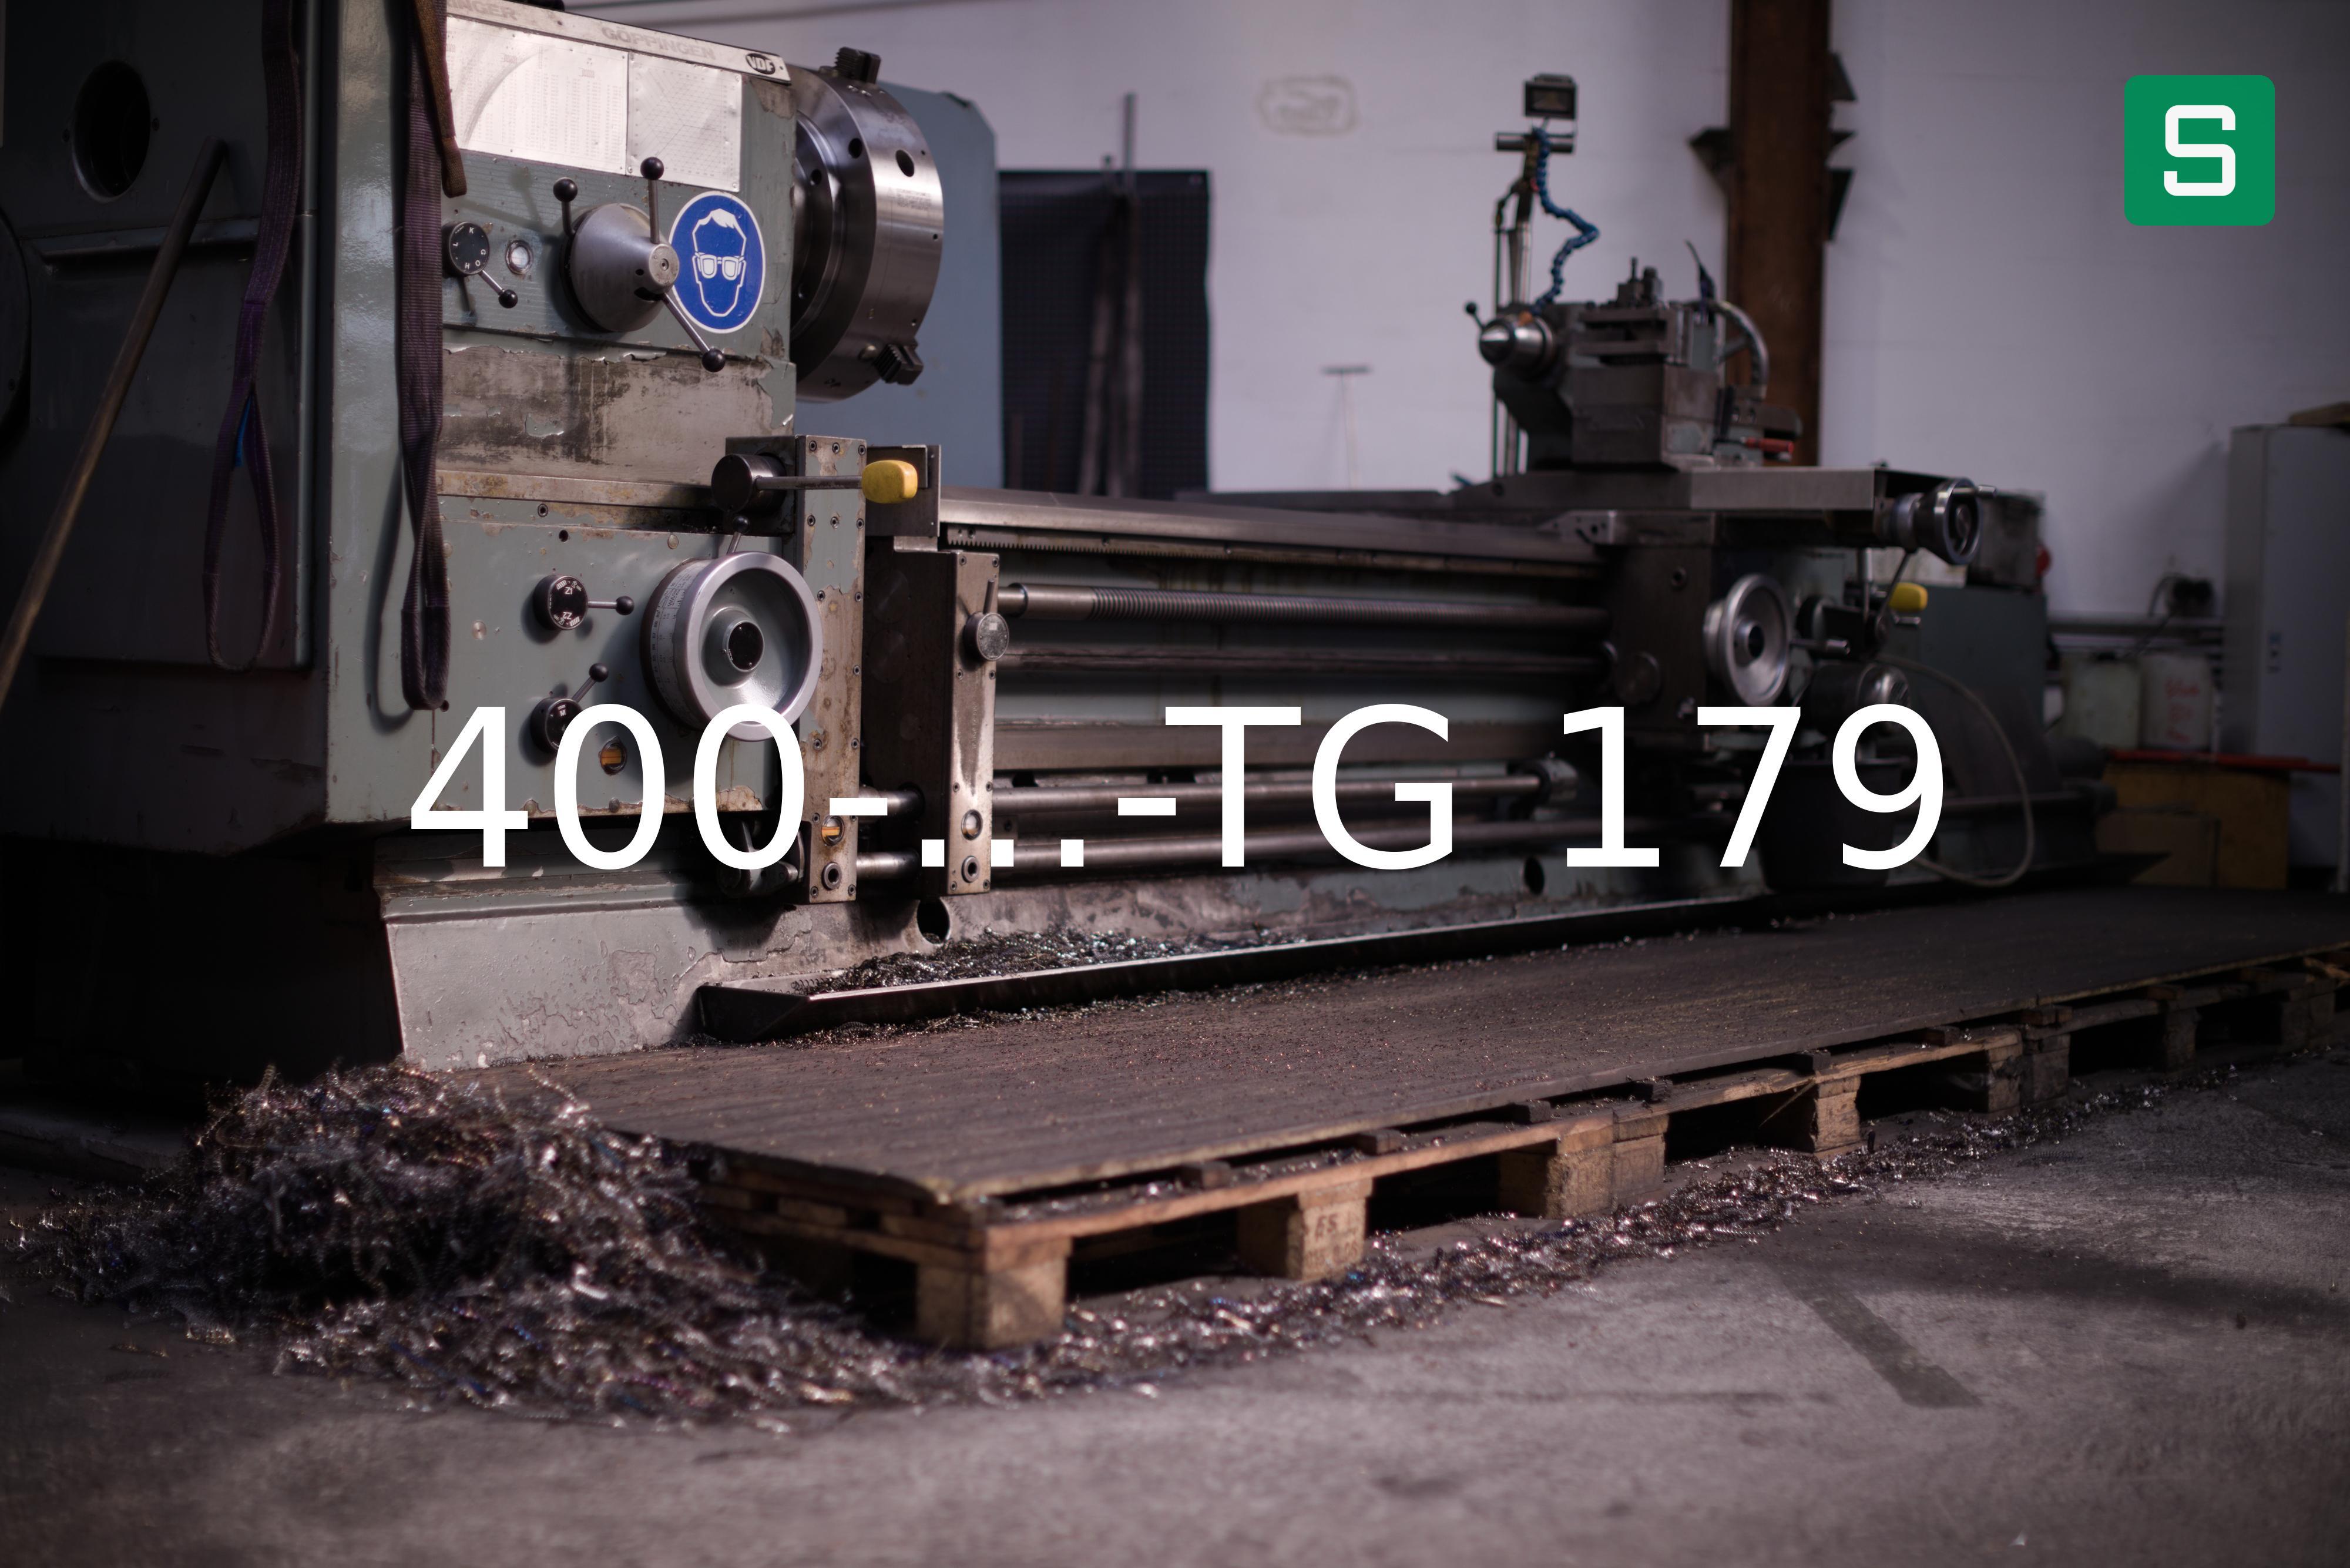 Steel Material: 400-...-TG 179